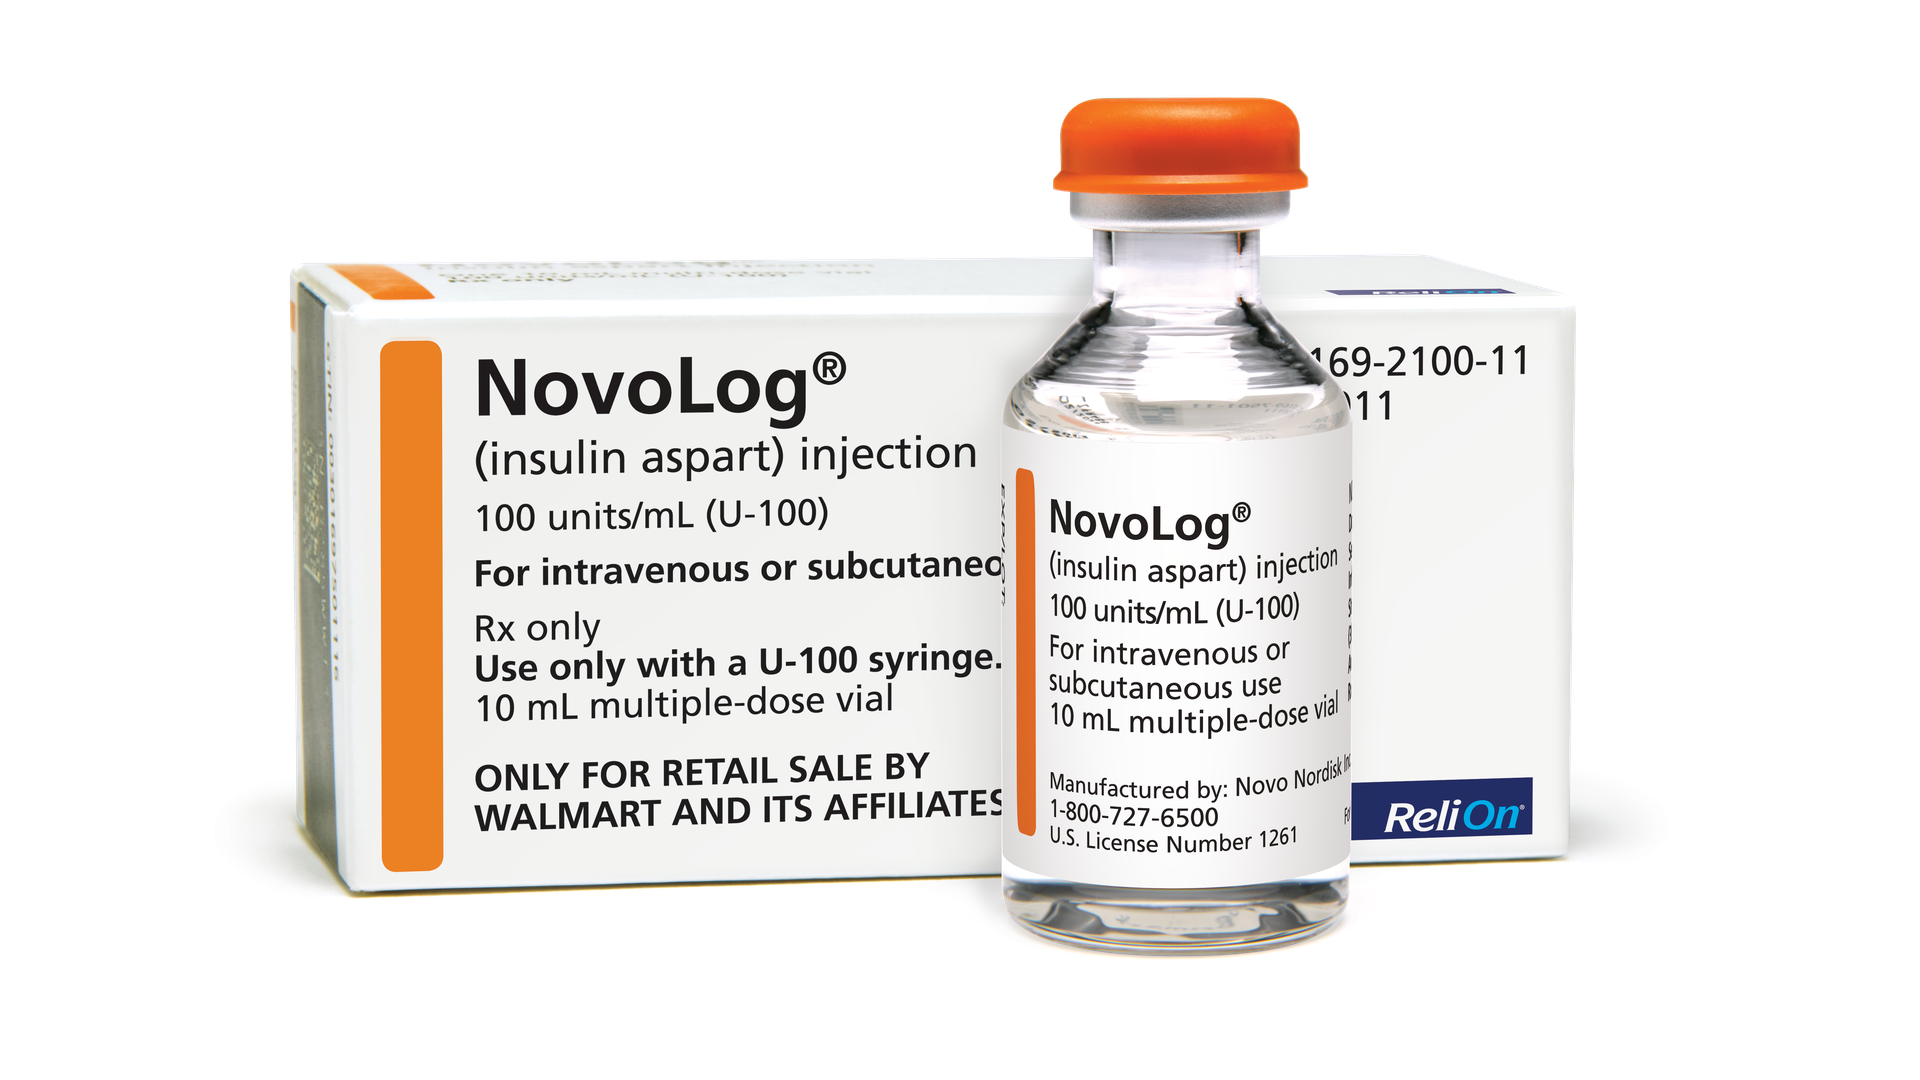 Walmart's version of NovoLog insulin.